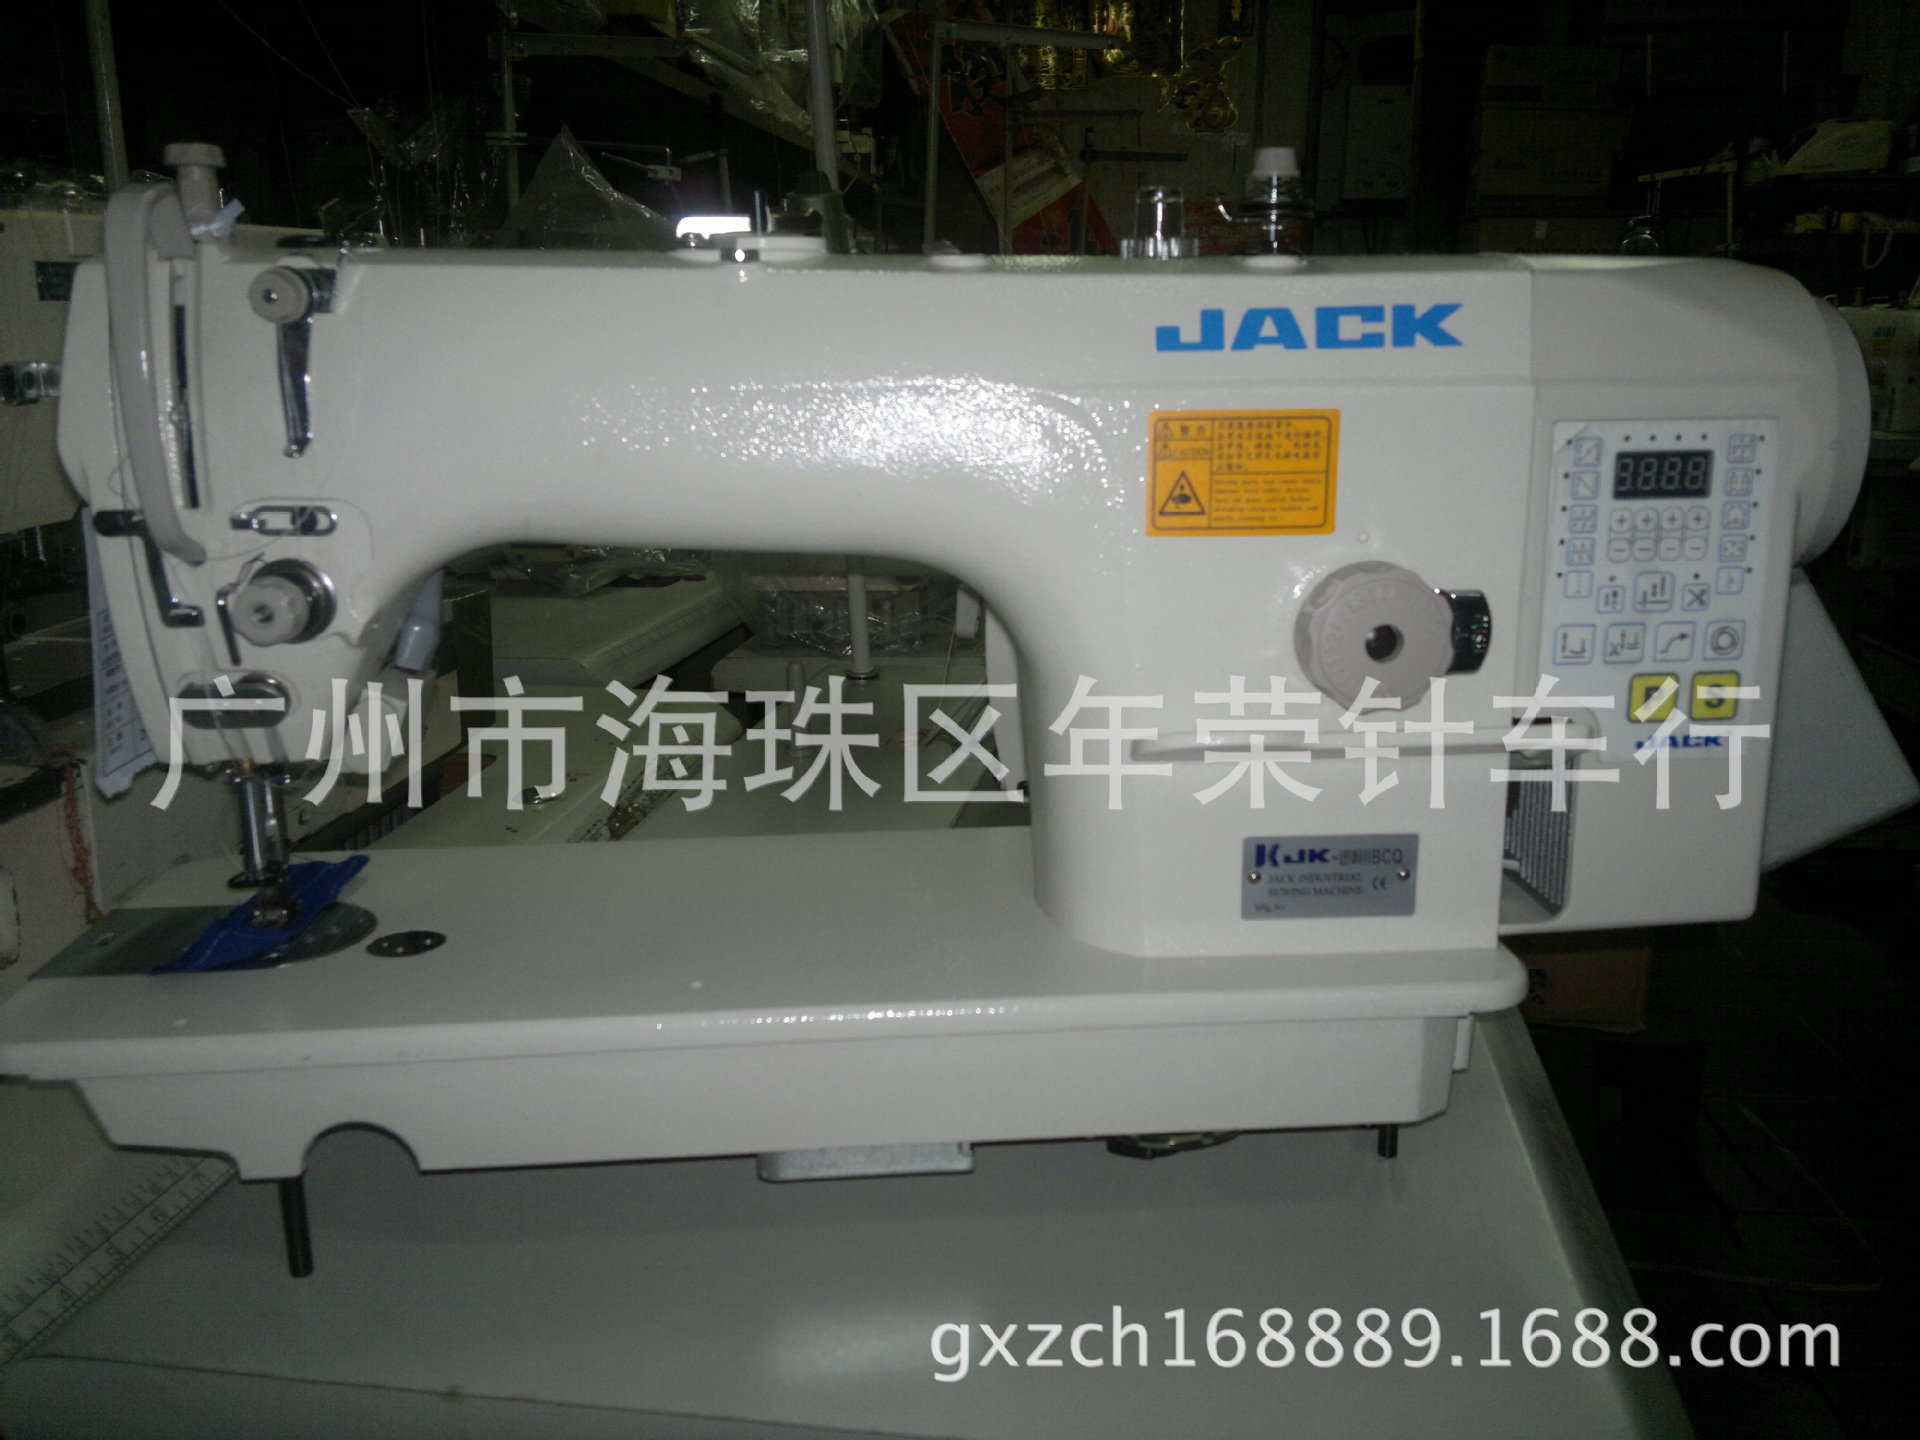 厂家直销 杰克迅利ii一体直驱电脑平缝机 缝纫机 工业缝纫机